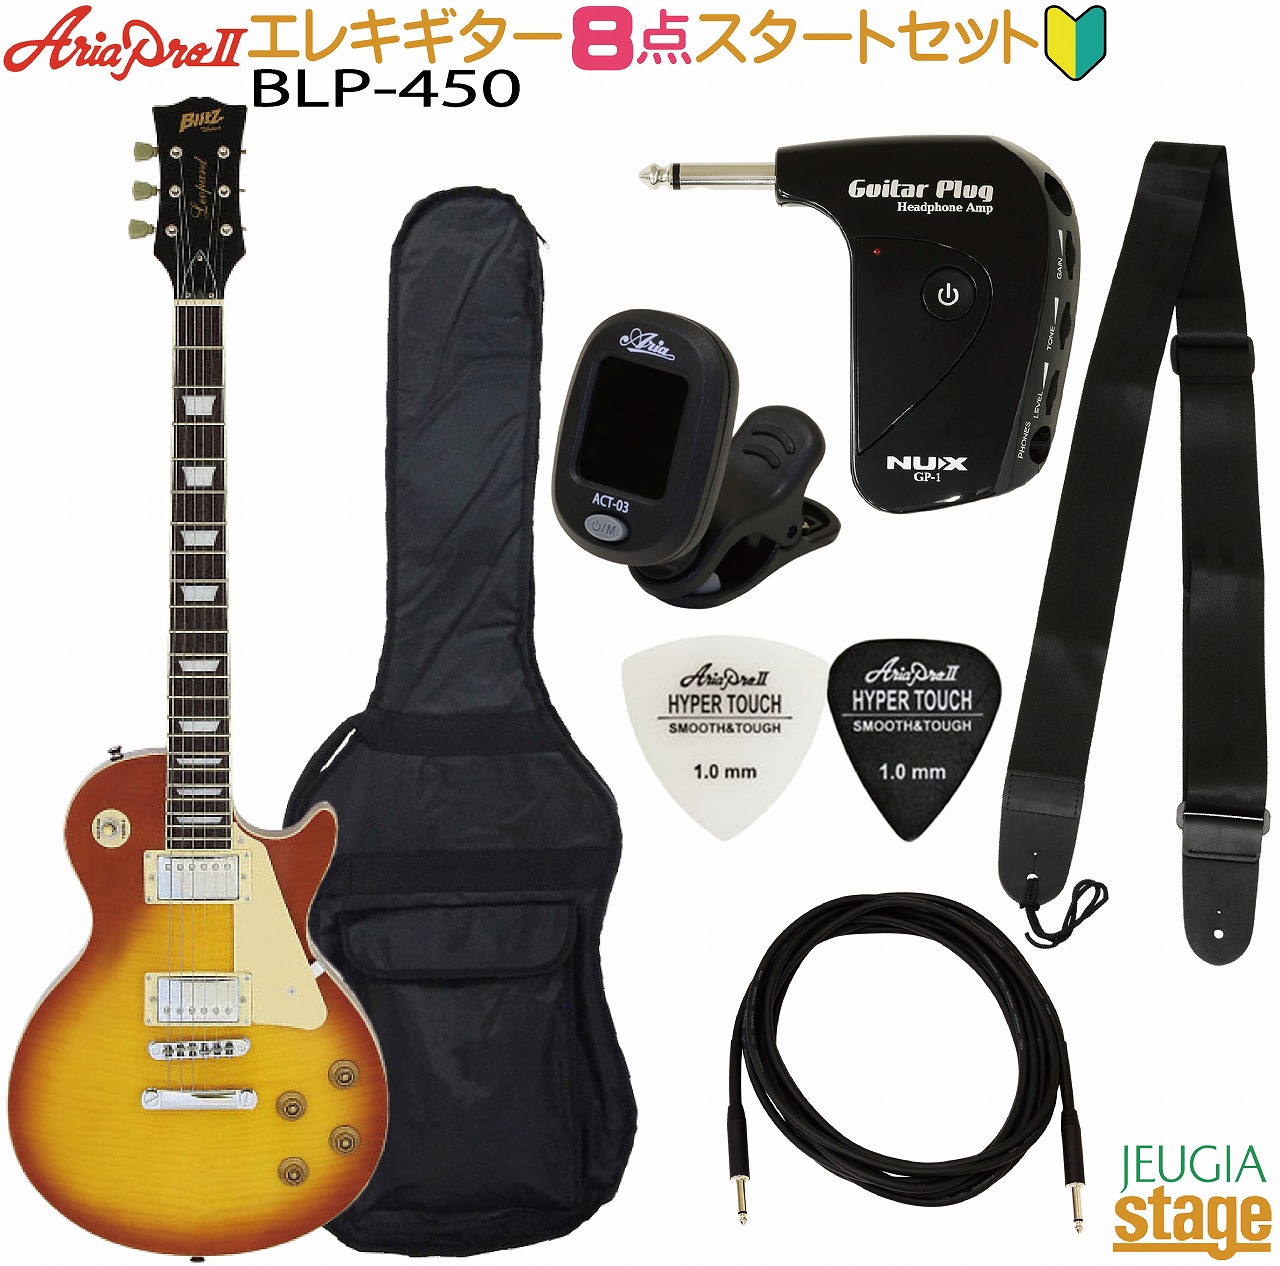 格安新品しんちゃん様専用 Aria Pro II BLP-450 レスポールタイプ ギター